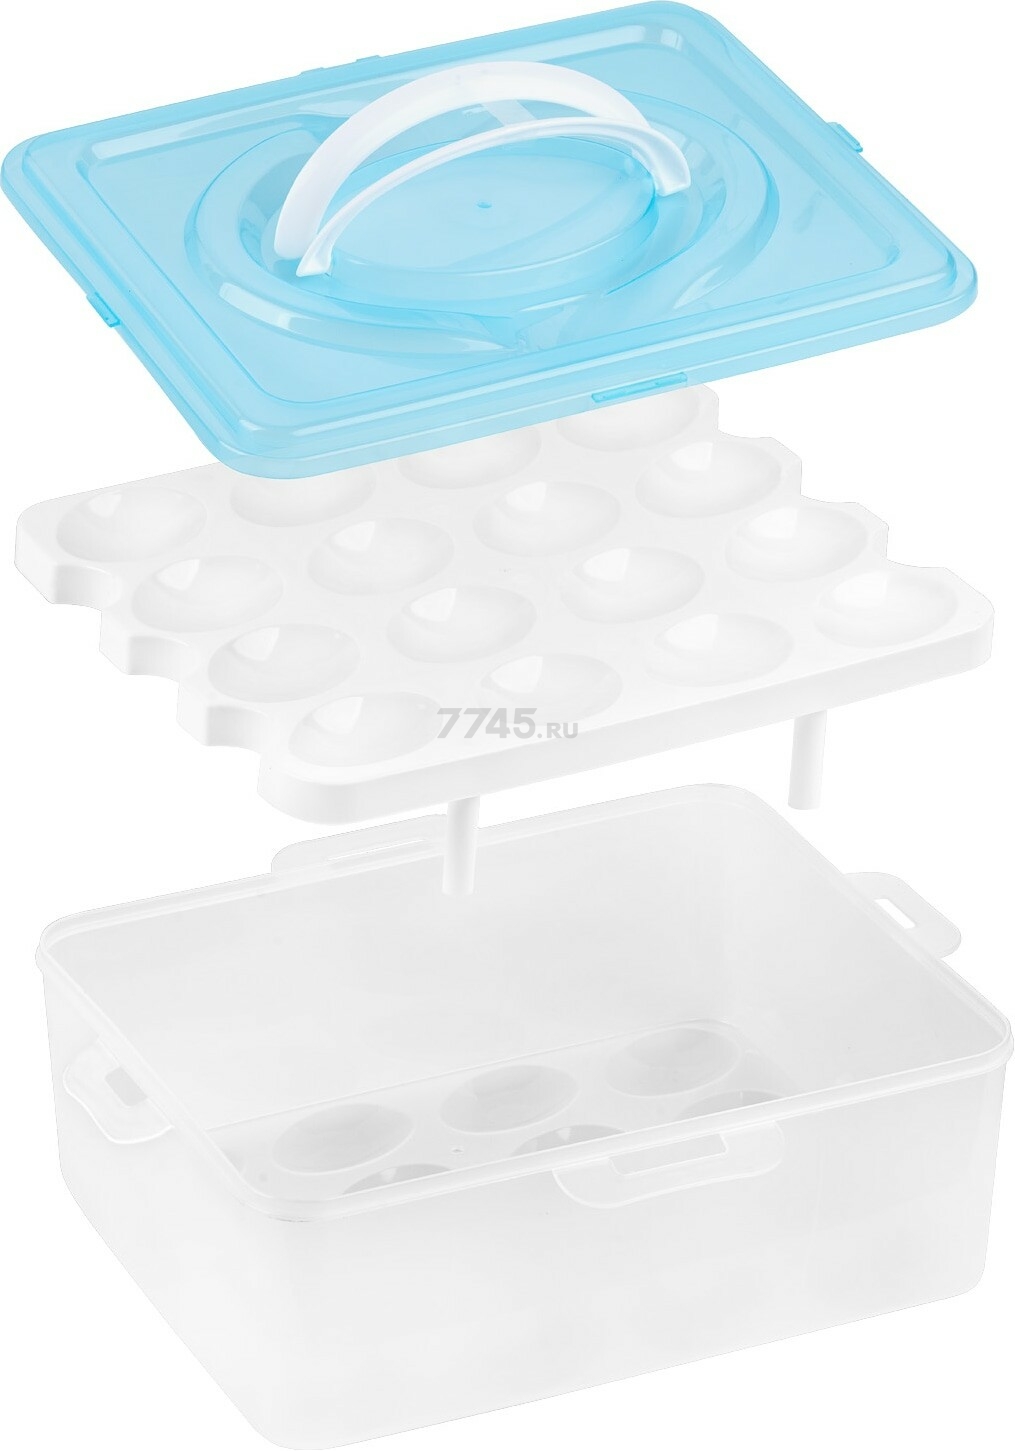 Контейнер пластиковый для хранения яиц PERFECTO LINEA 32 ячейки голубой (34-028232) - Фото 2